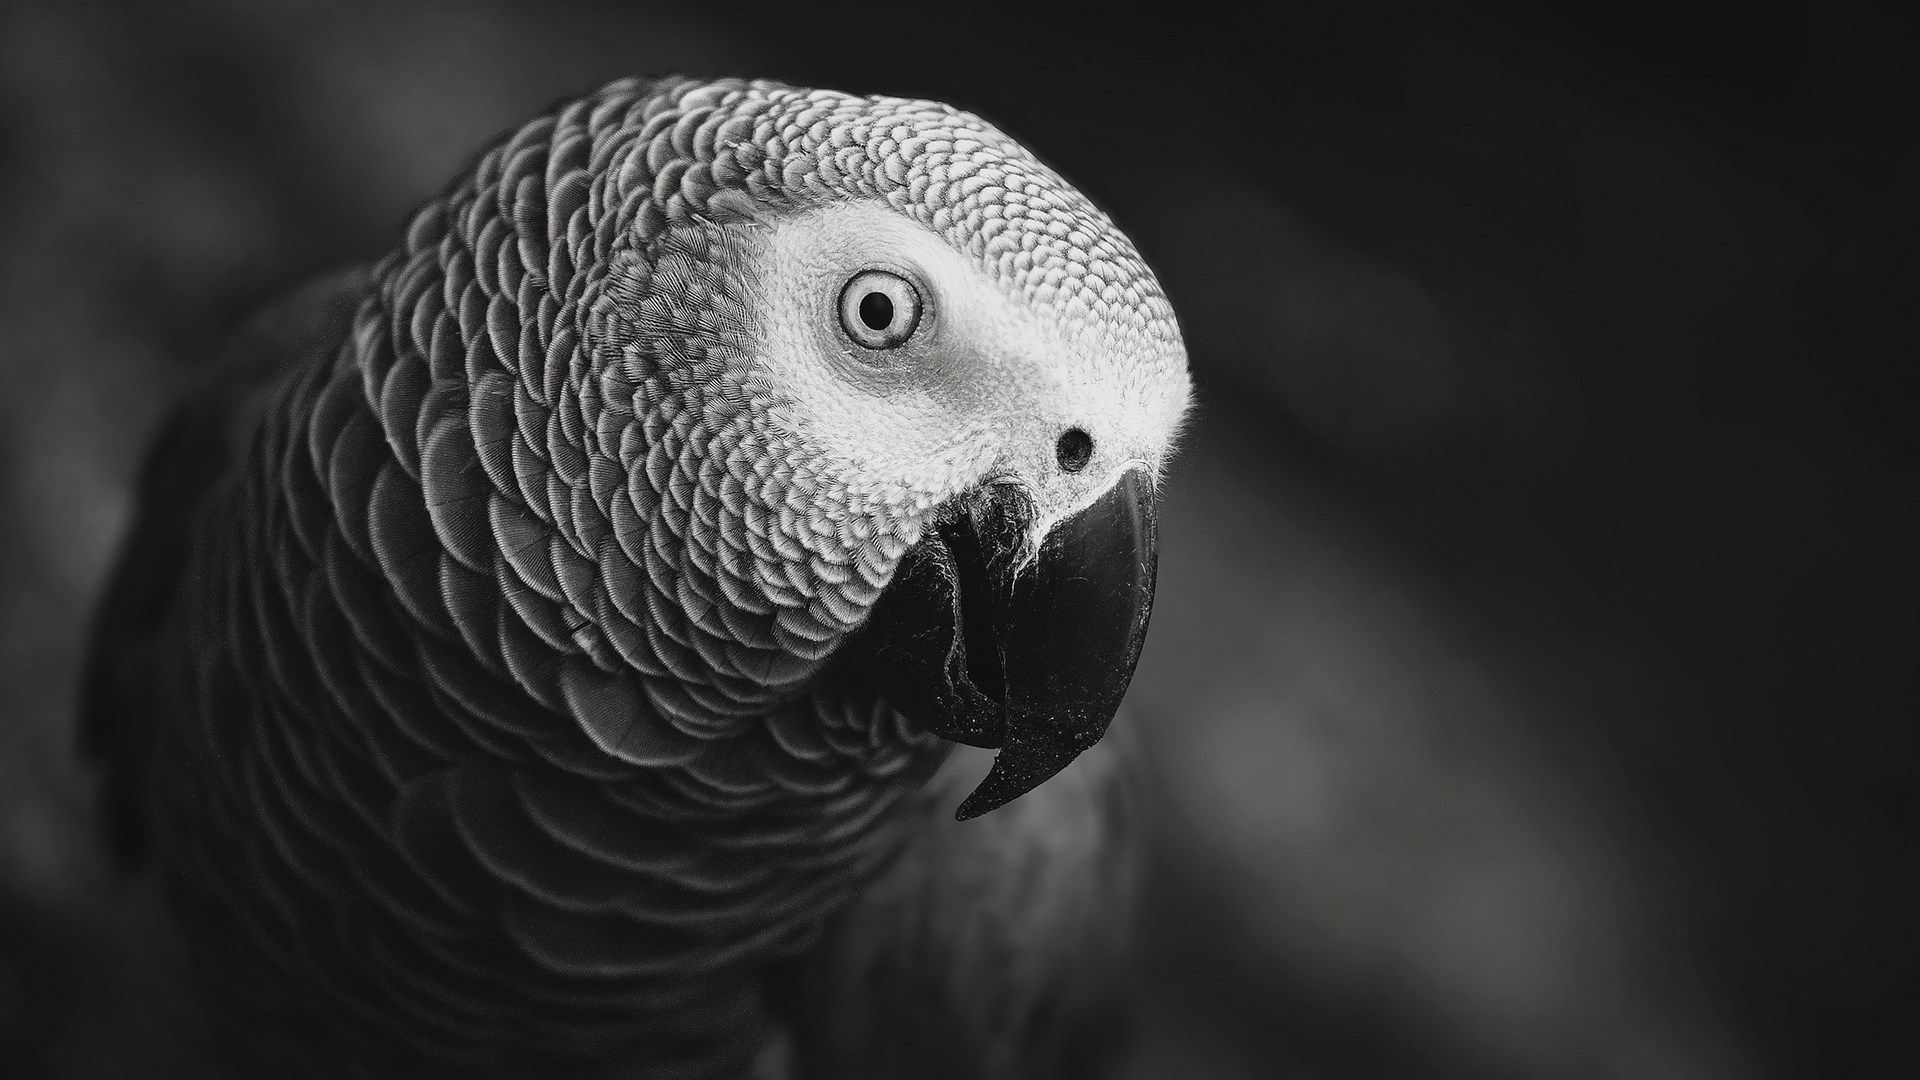 1920x1080 Parrot Bird HD Wallpaper FreeHDWalls | African grey parrot, African grey, Parrot